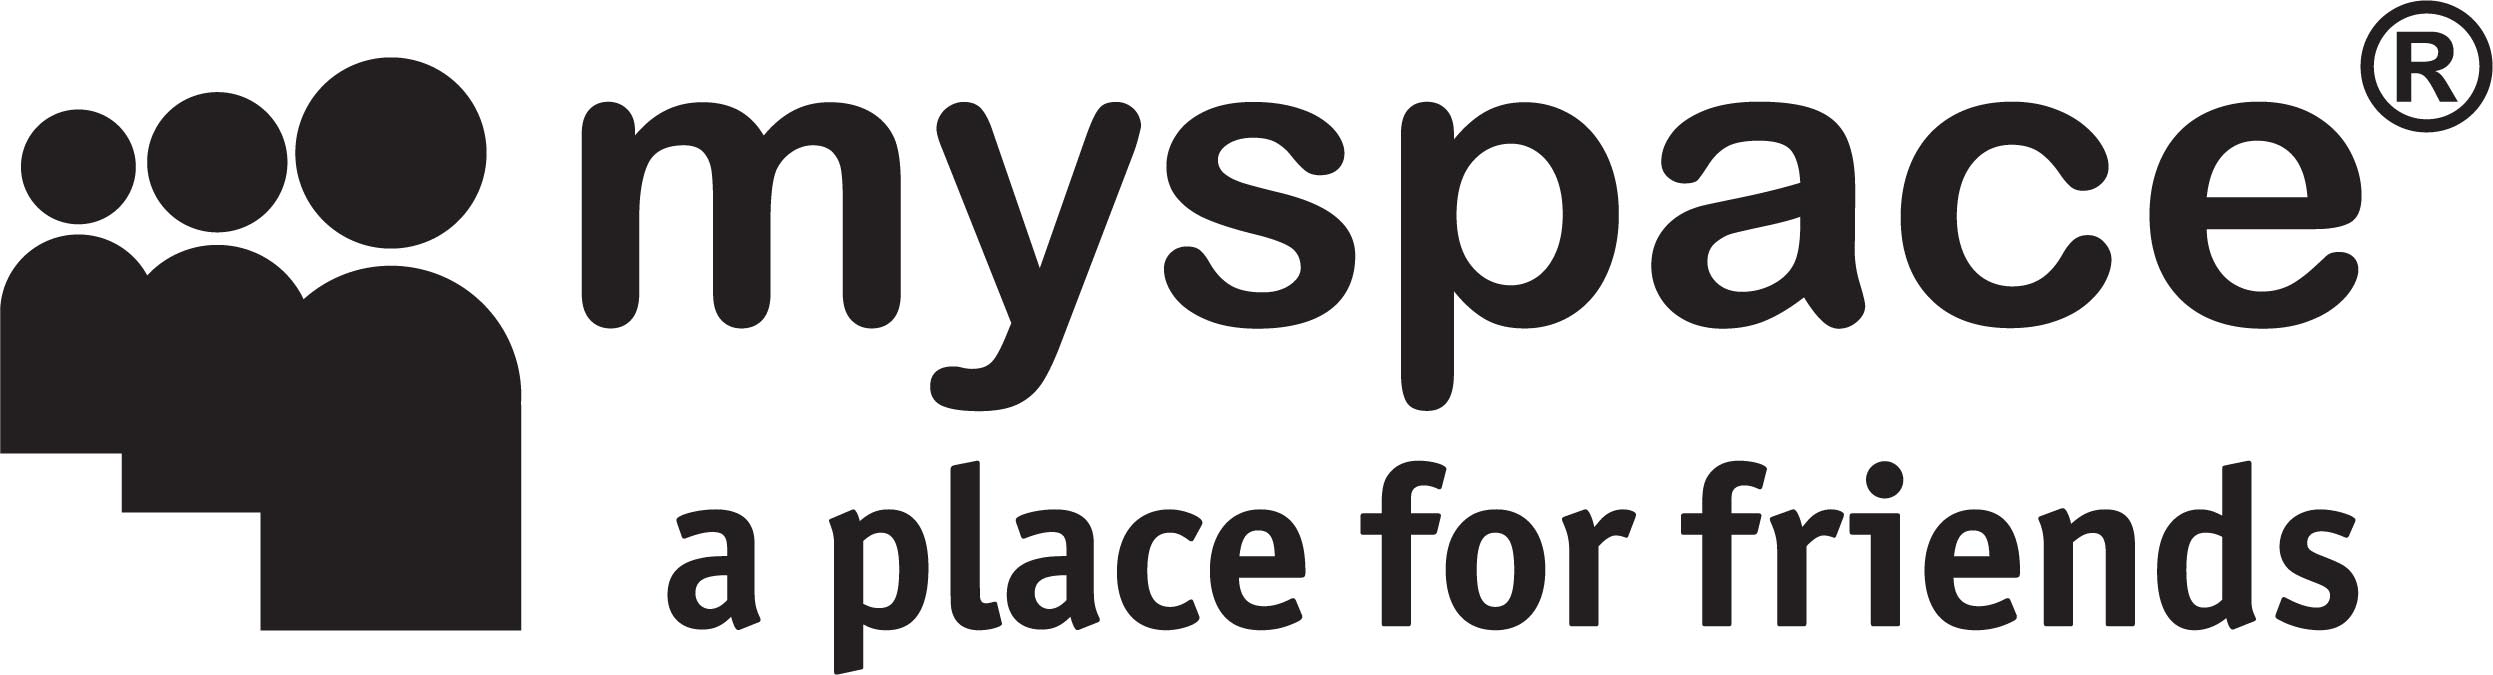 logo myspace a place for friends